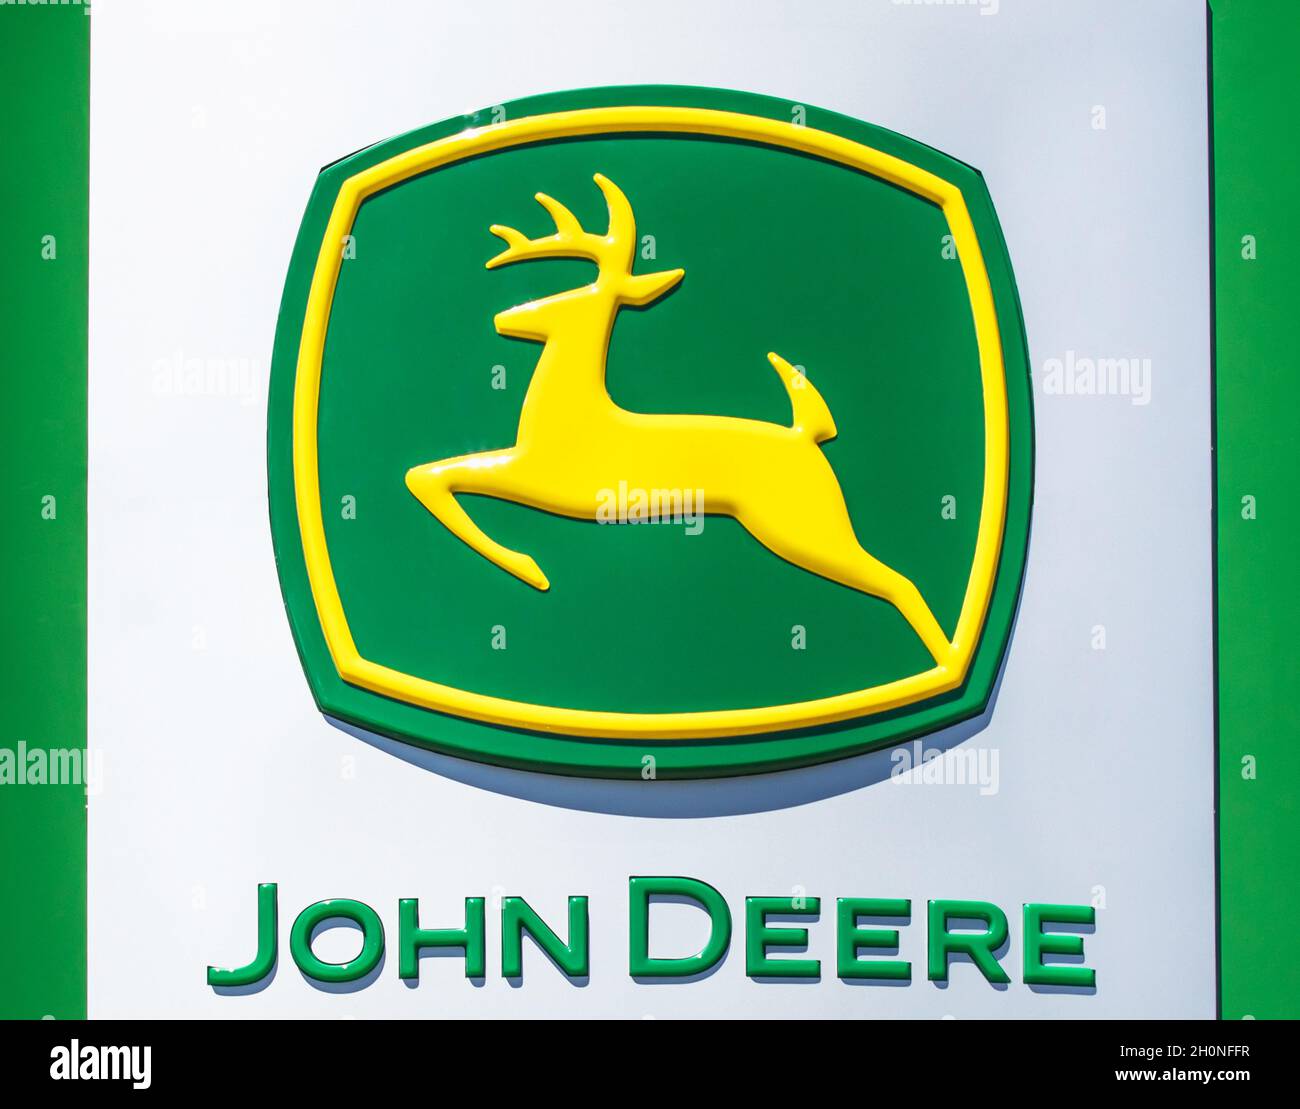 Đại lý John Deere là nơi cam kết đem lại những sản phẩm và dịch vụ chất lượng nhất cho khách hàng. Hãy ghé thăm đại lý John Deere gần nhất để trải nghiệm ánh sáng xanh, đem lại sự tươi mới cho cuộc sống của bạn.